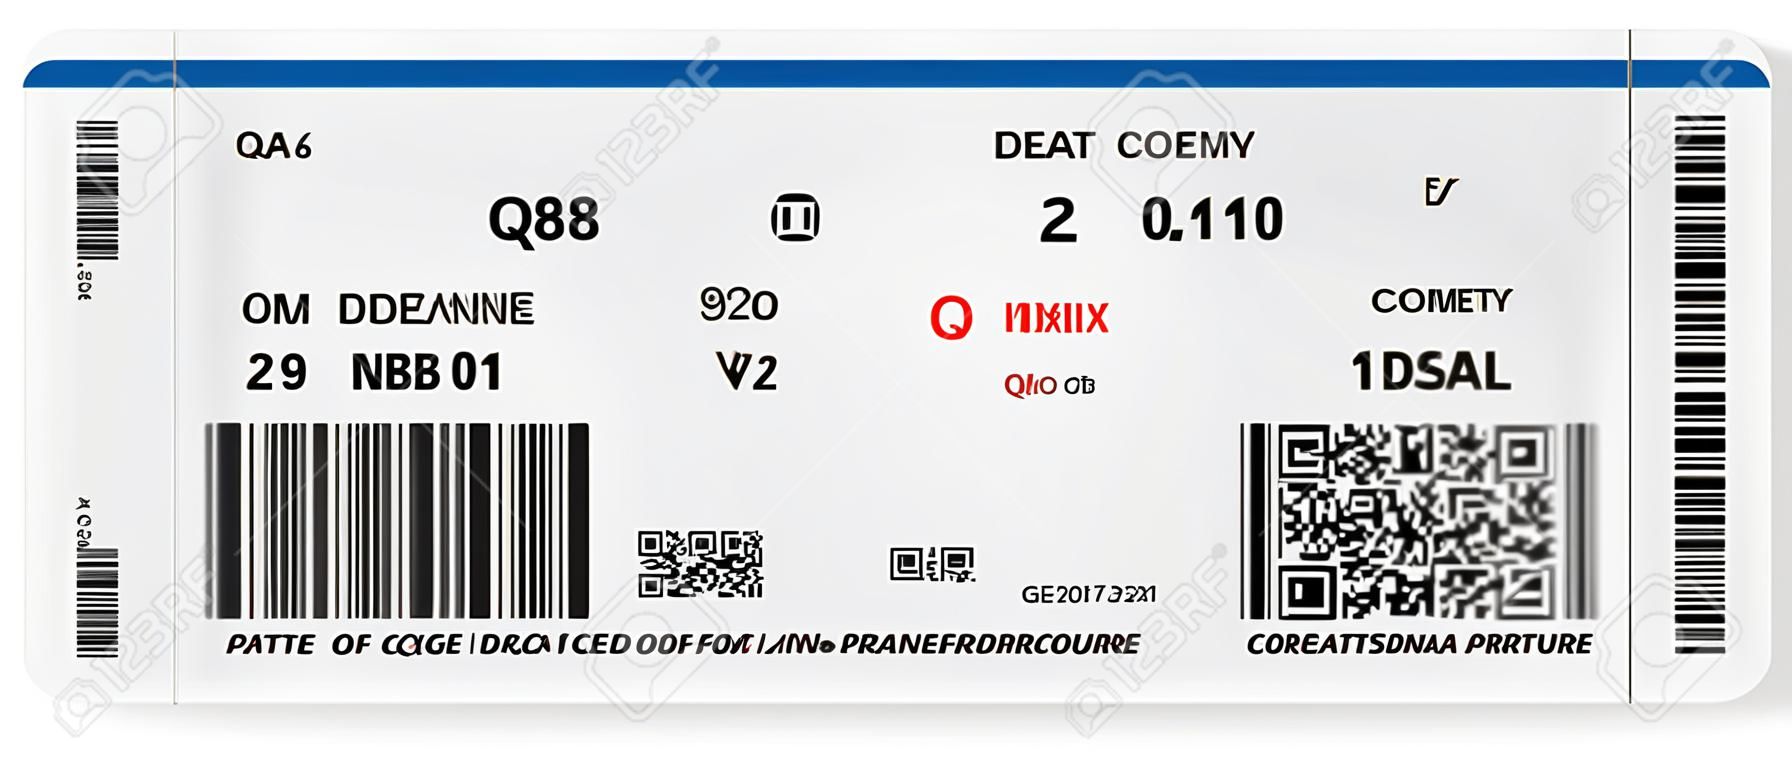 Patrón de embarque de la aerolínea pasar ticket con código QR2. Concepto de viaje, viaje o de negocios. Aislado en blanco. Ilustración vectorial